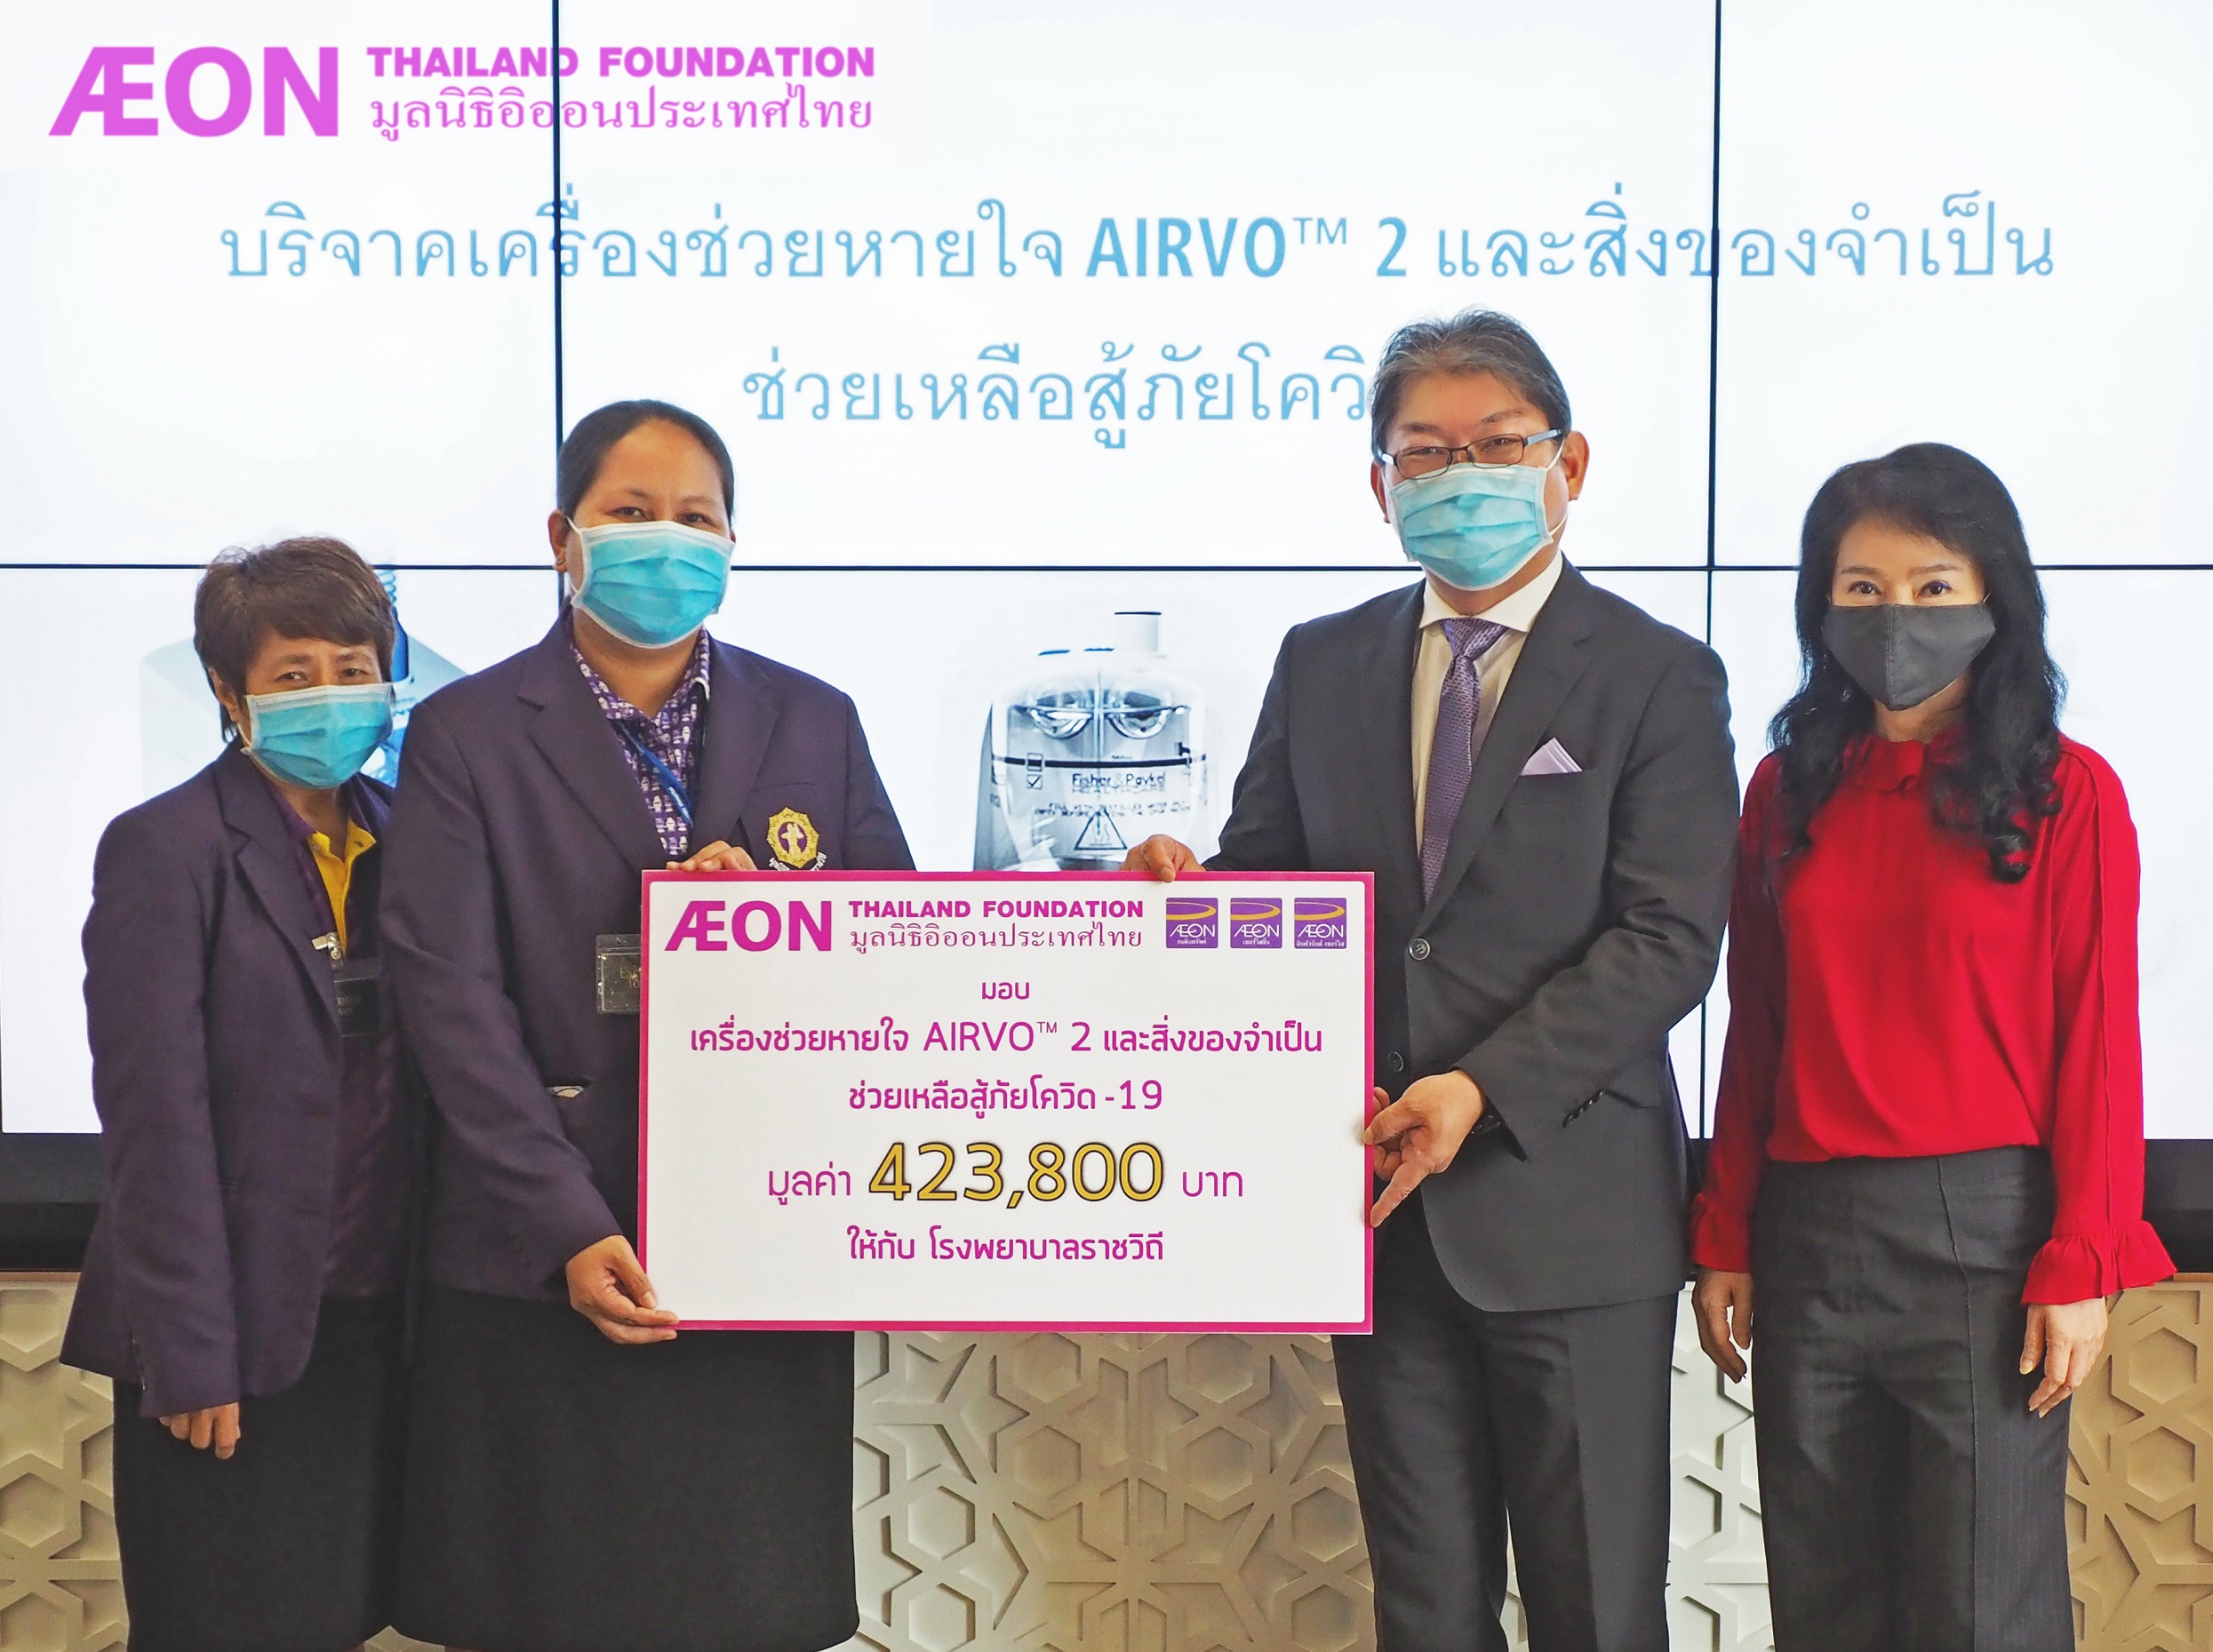 ภาพข่าว: มูลนิธิอิออนประเทศไทย มอบเครื่องช่วยหายใจ AIRVOTM 2 และสิ่งของจำเป็นแก่โรงพยาบาลราชวิถี